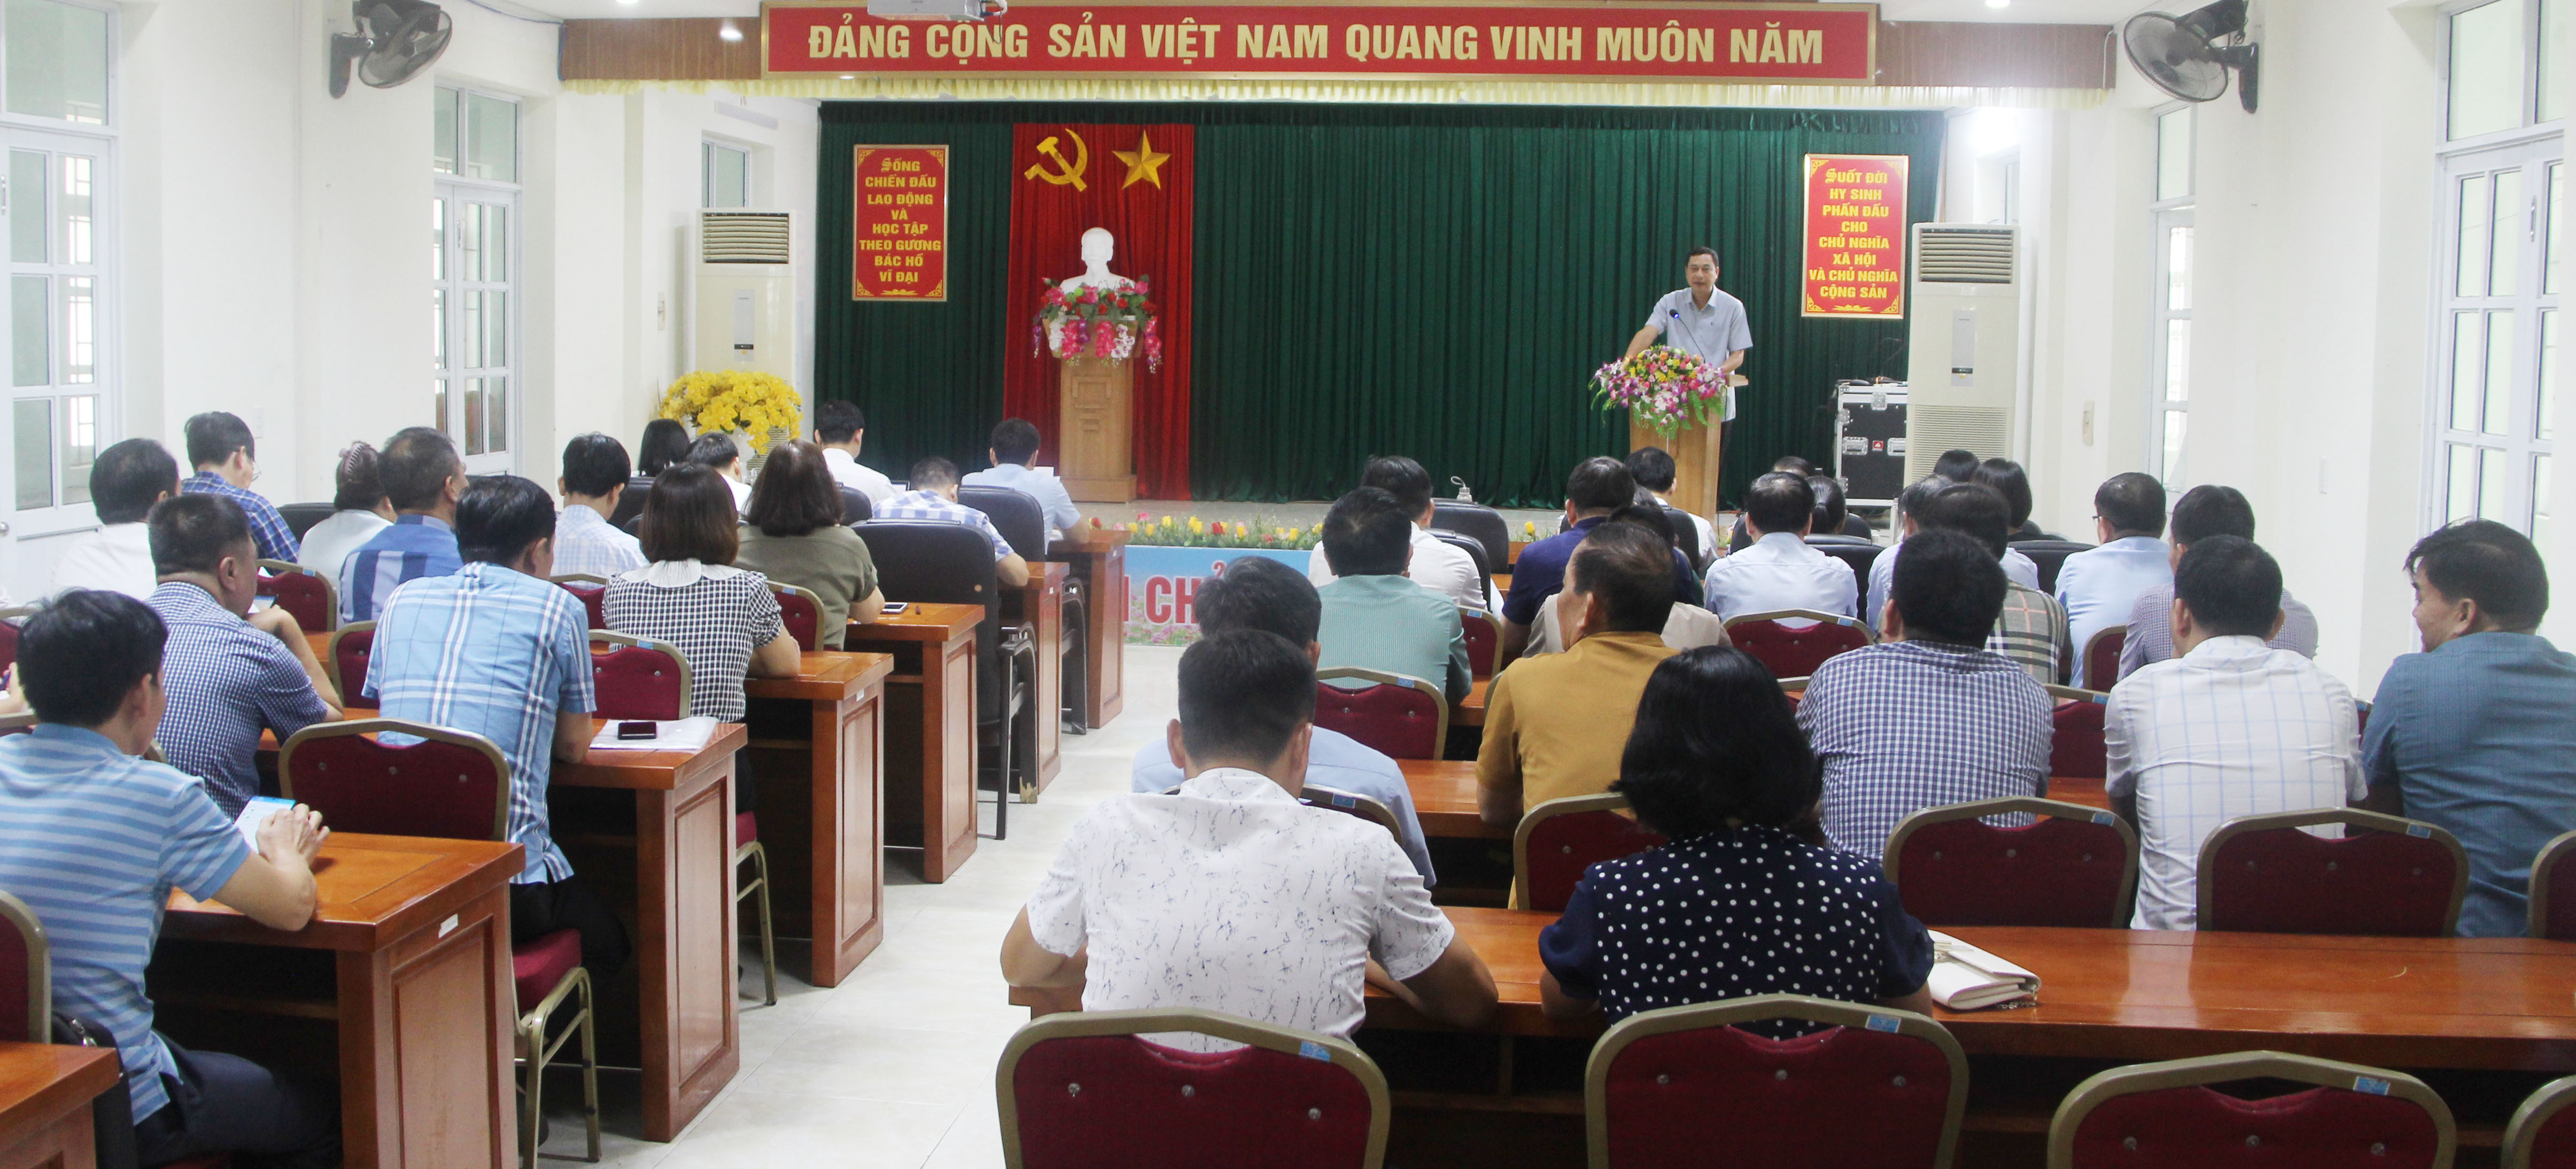 Đồng chí Nguyễn Văn Giao, Quyền Giám đốc Sở Y tế, phát biểu chỉ đạo tại hội nghị .